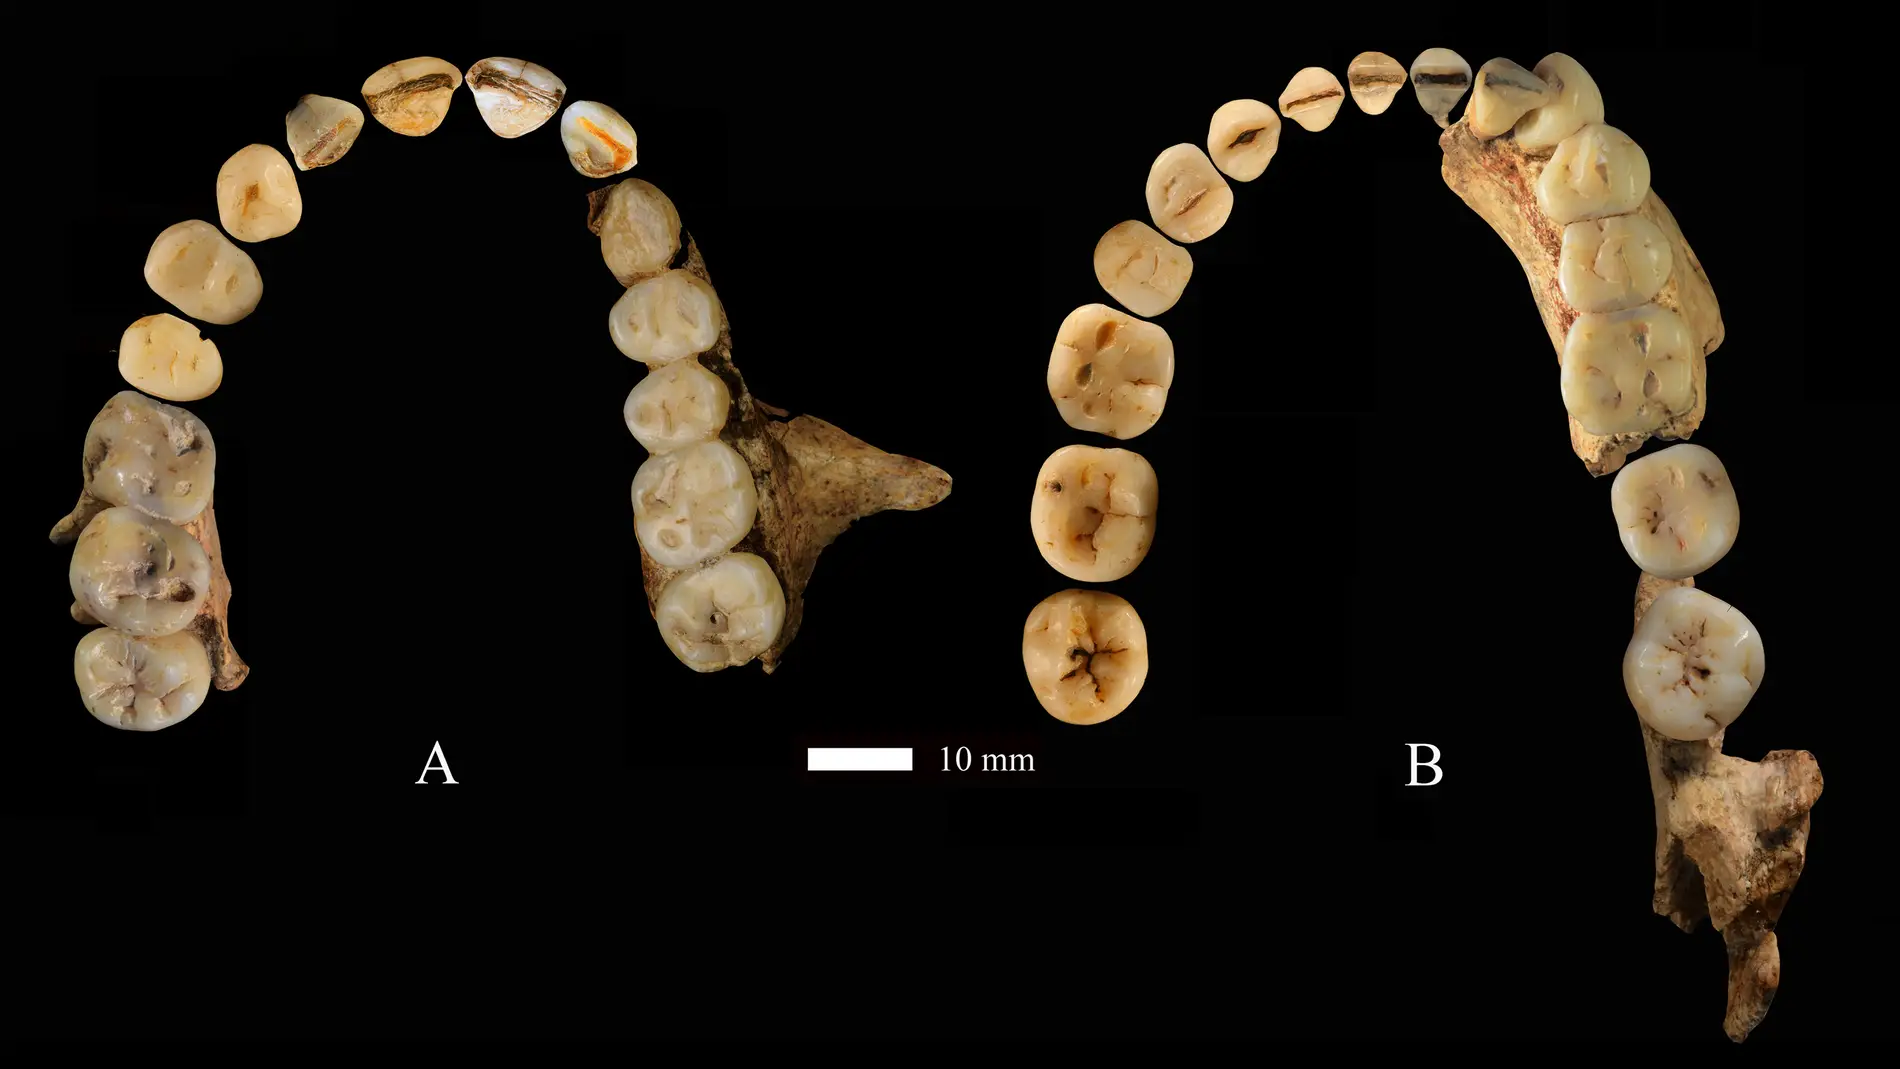 Hallan indicios de denticion primitiva en restos de Homo sapiens en China